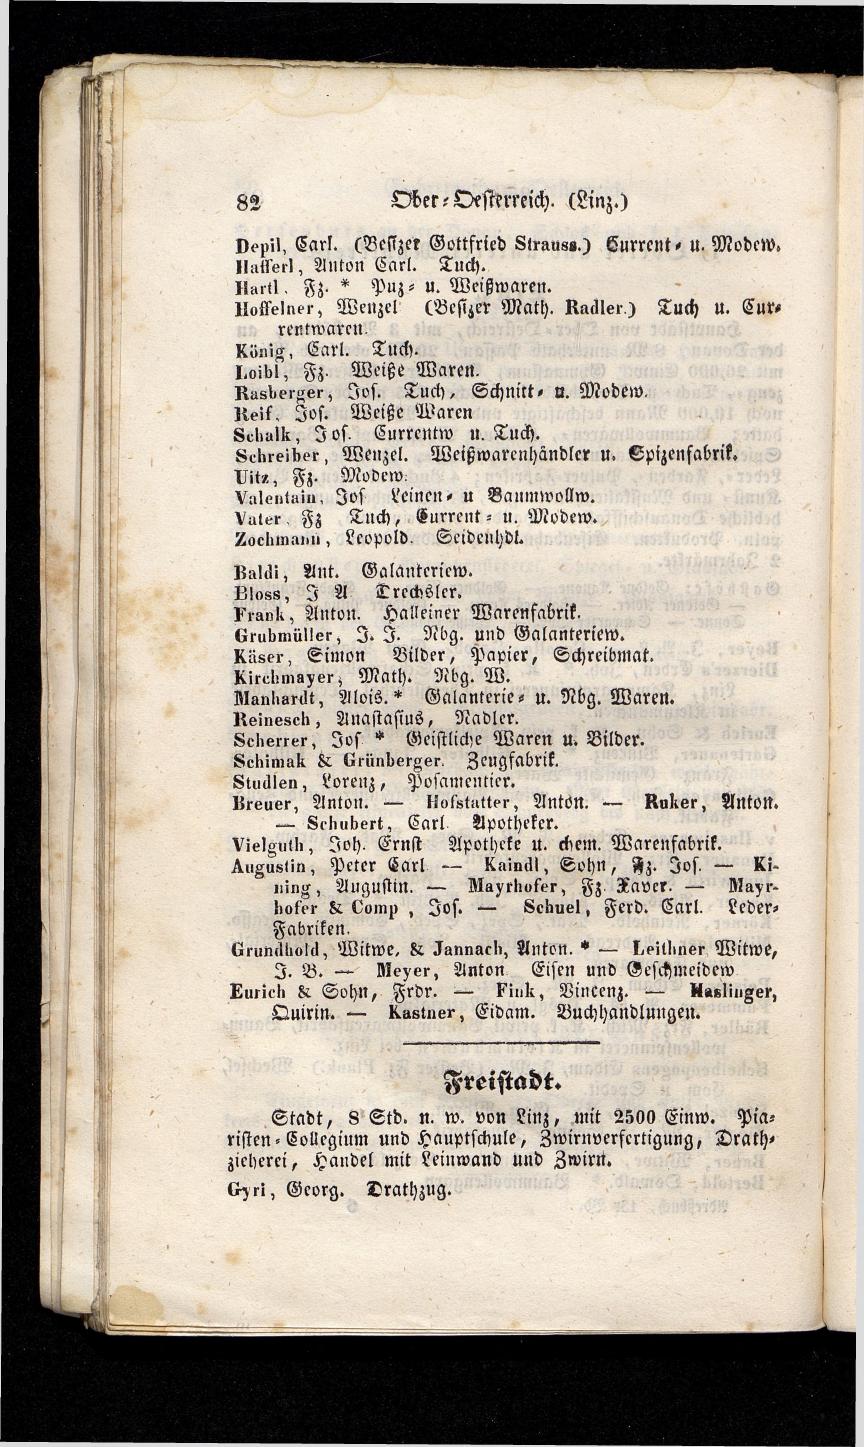 Grosses Adressbuch der Kaufleute. No. 13. Oesterreich ober u. unter der Enns 1844 - Seite 86